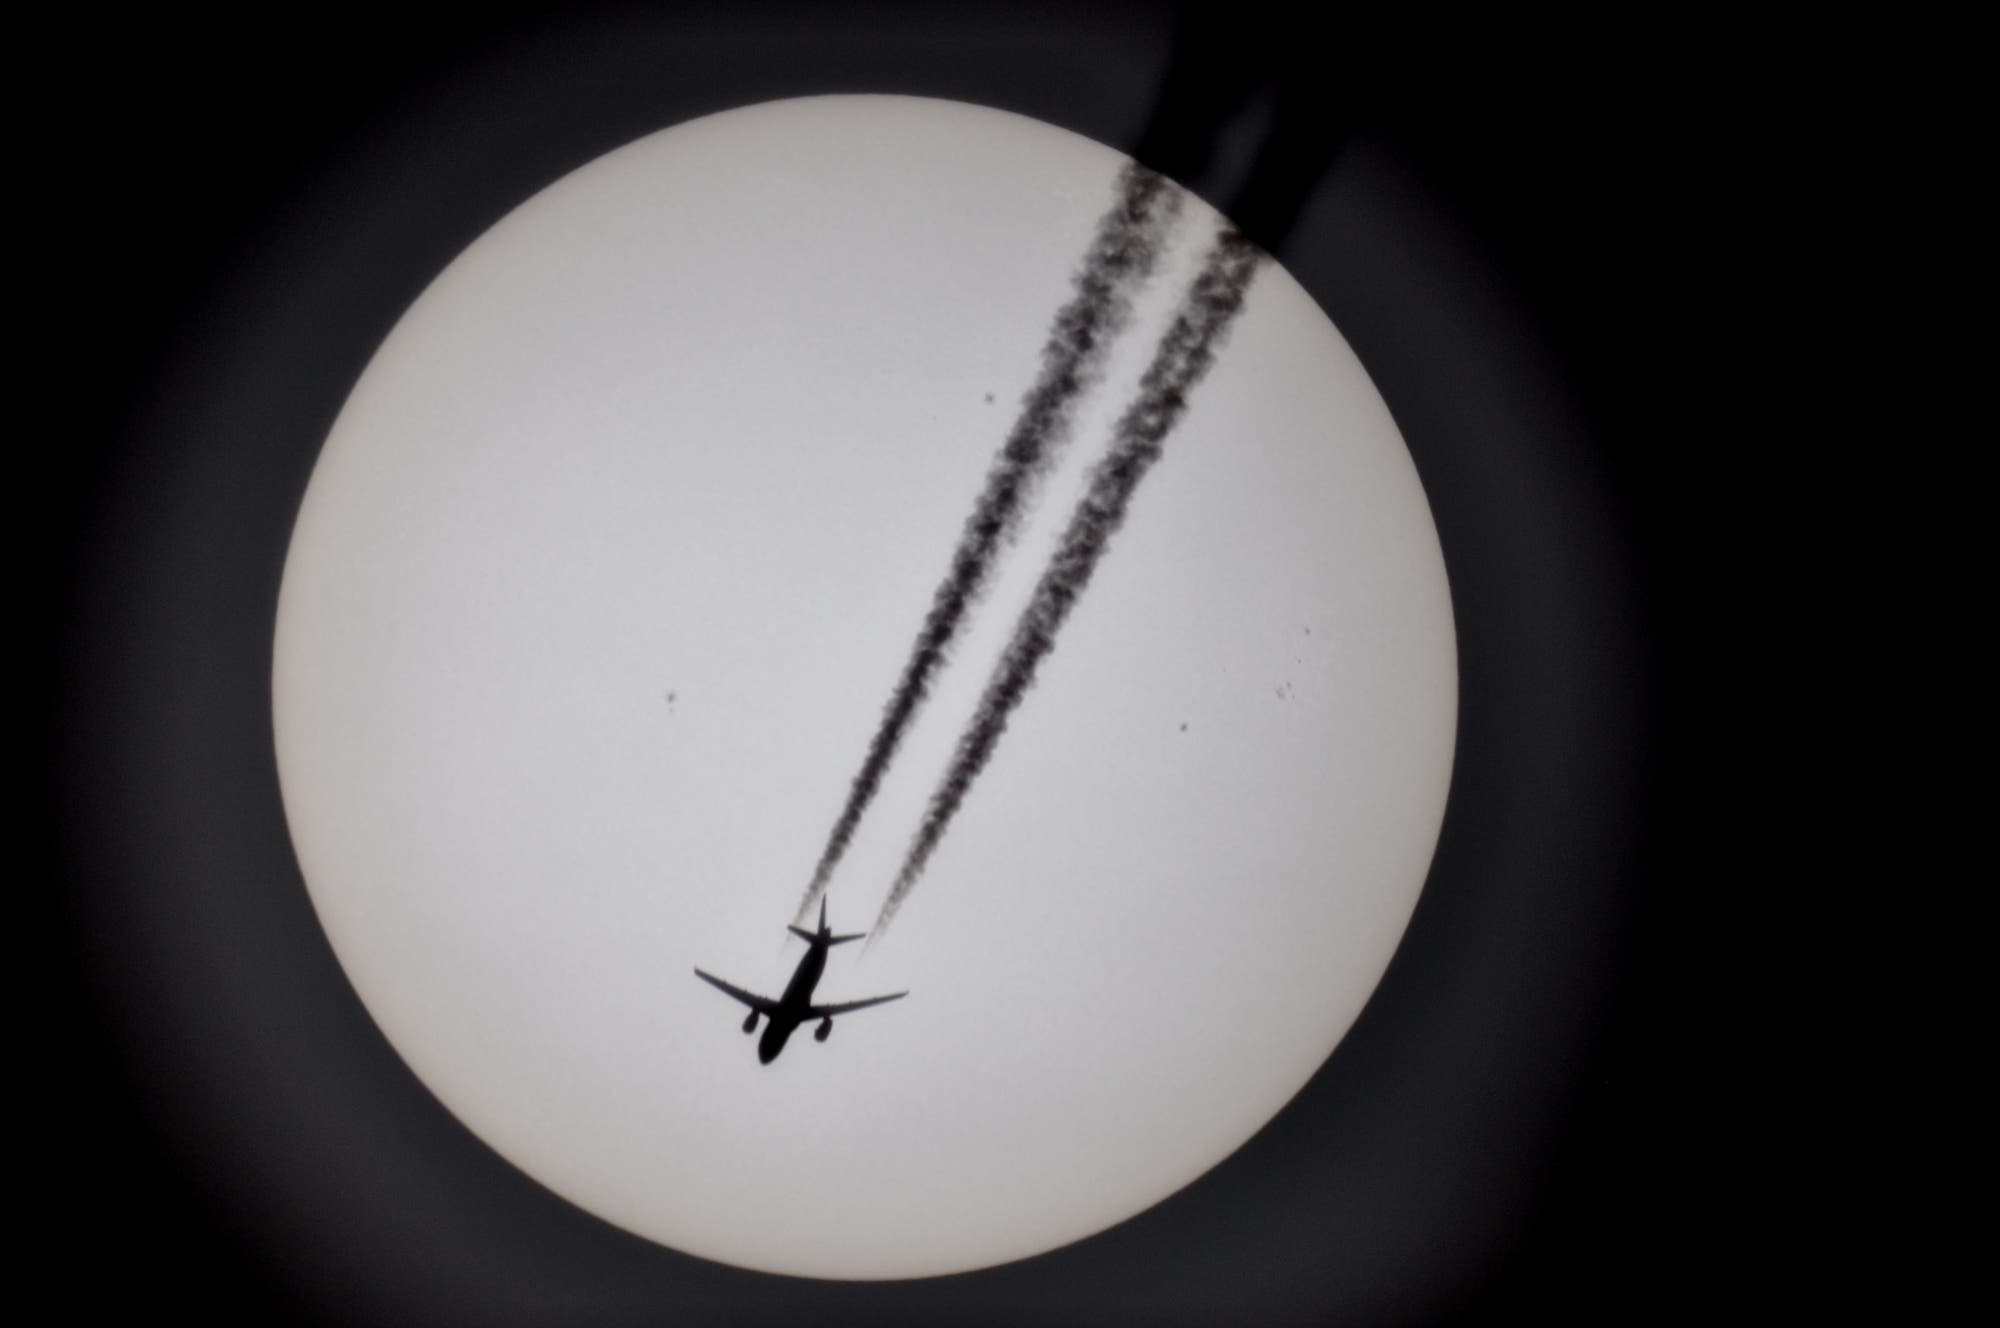 Sonne mit kleinen Sonnenflecken und mit Flugzeug